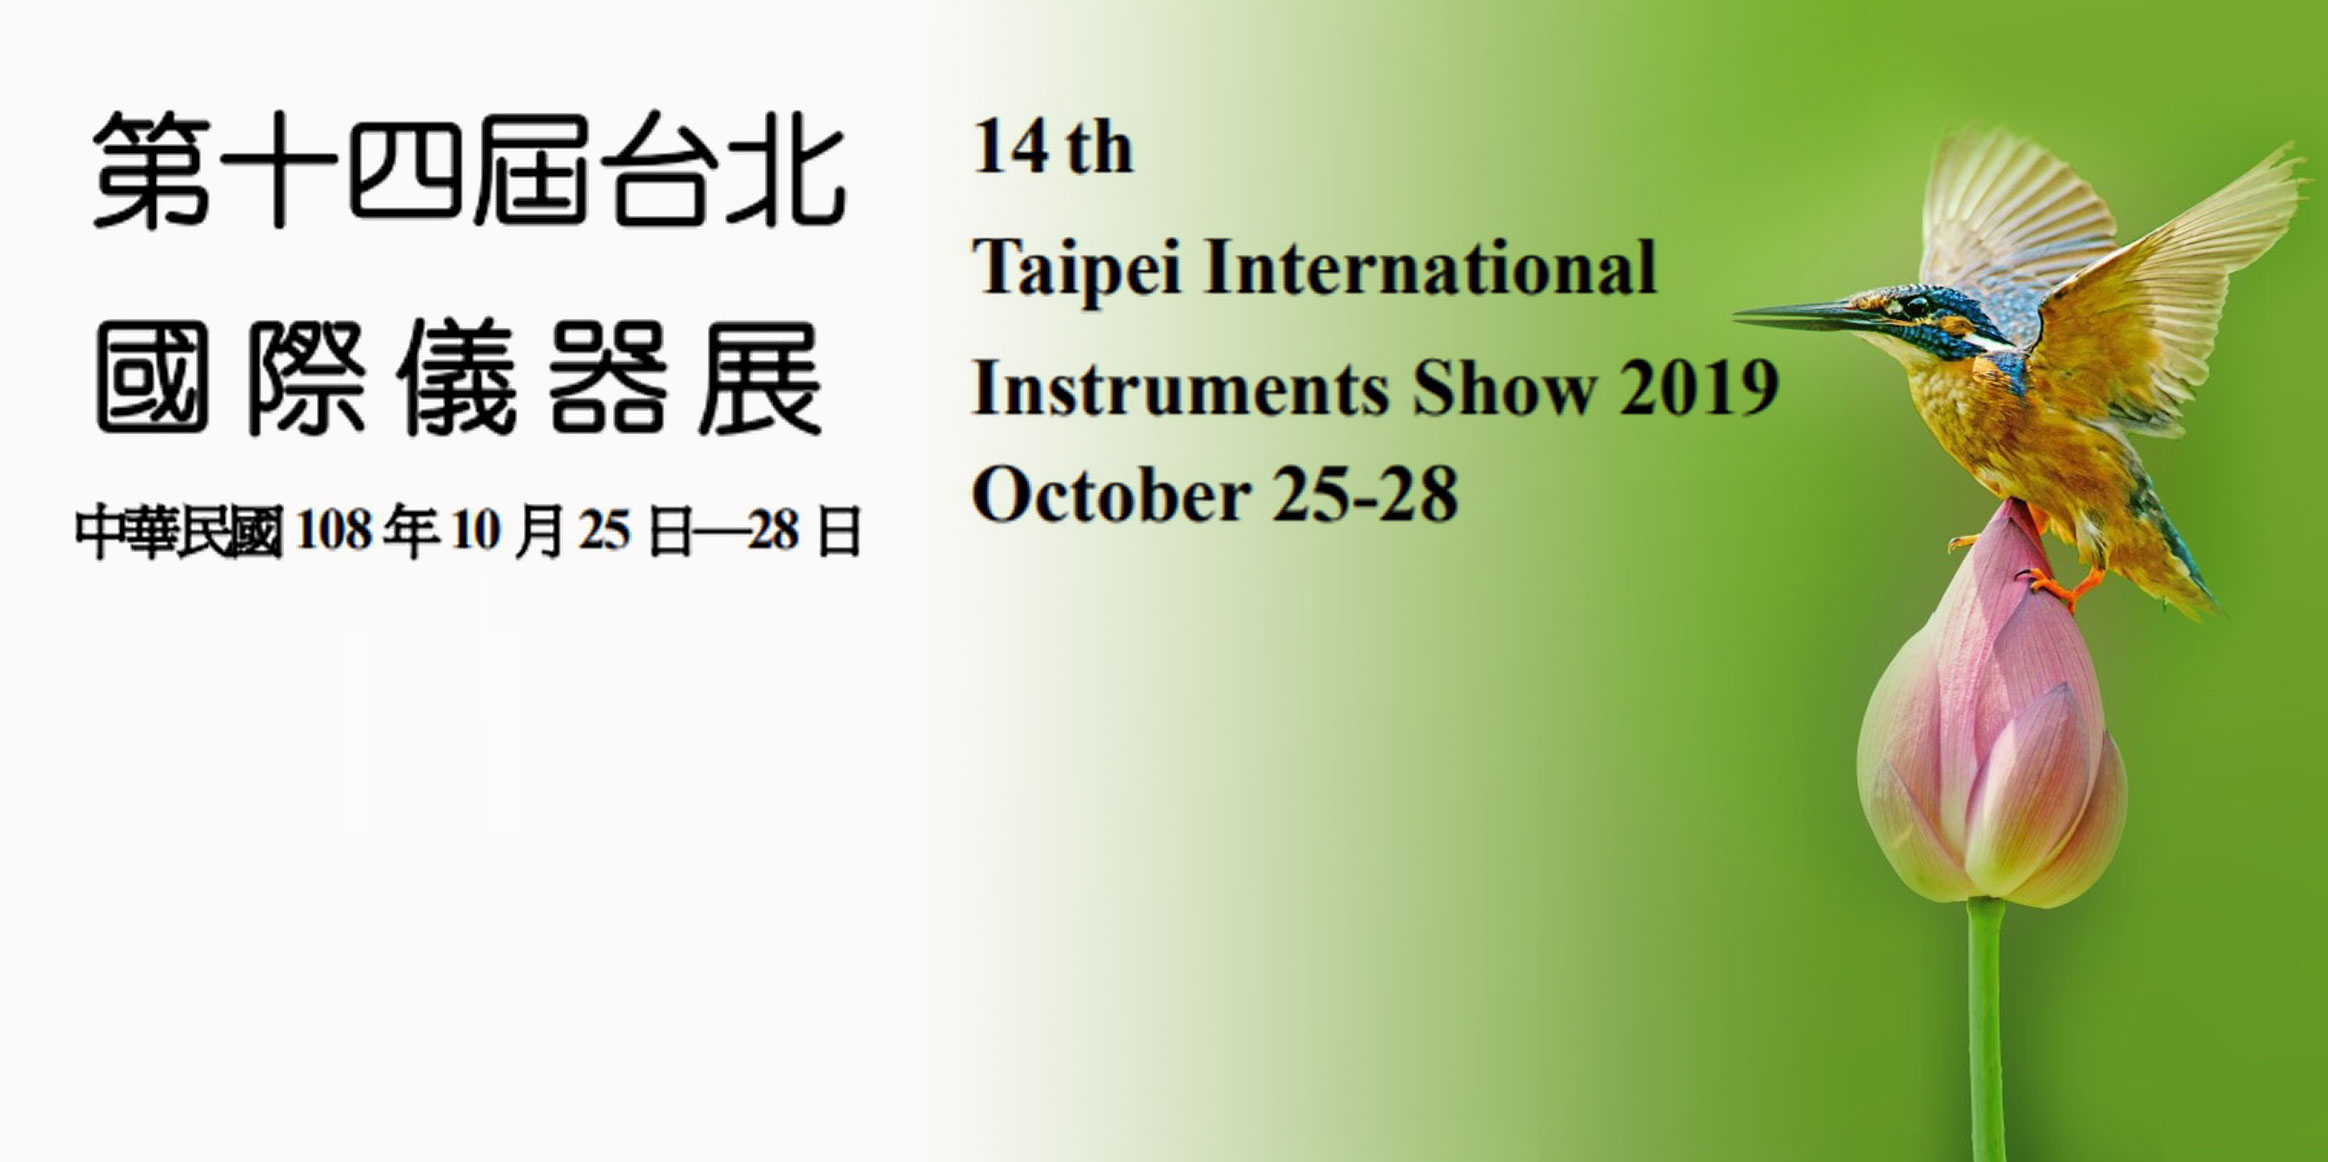 第14屆台北國際儀器展-本團隊於2019年10月25日至28日參與2019第14屆台北國際儀器展，推廣超極生技的全球首創、免校正酸鹼檢測系統。
              